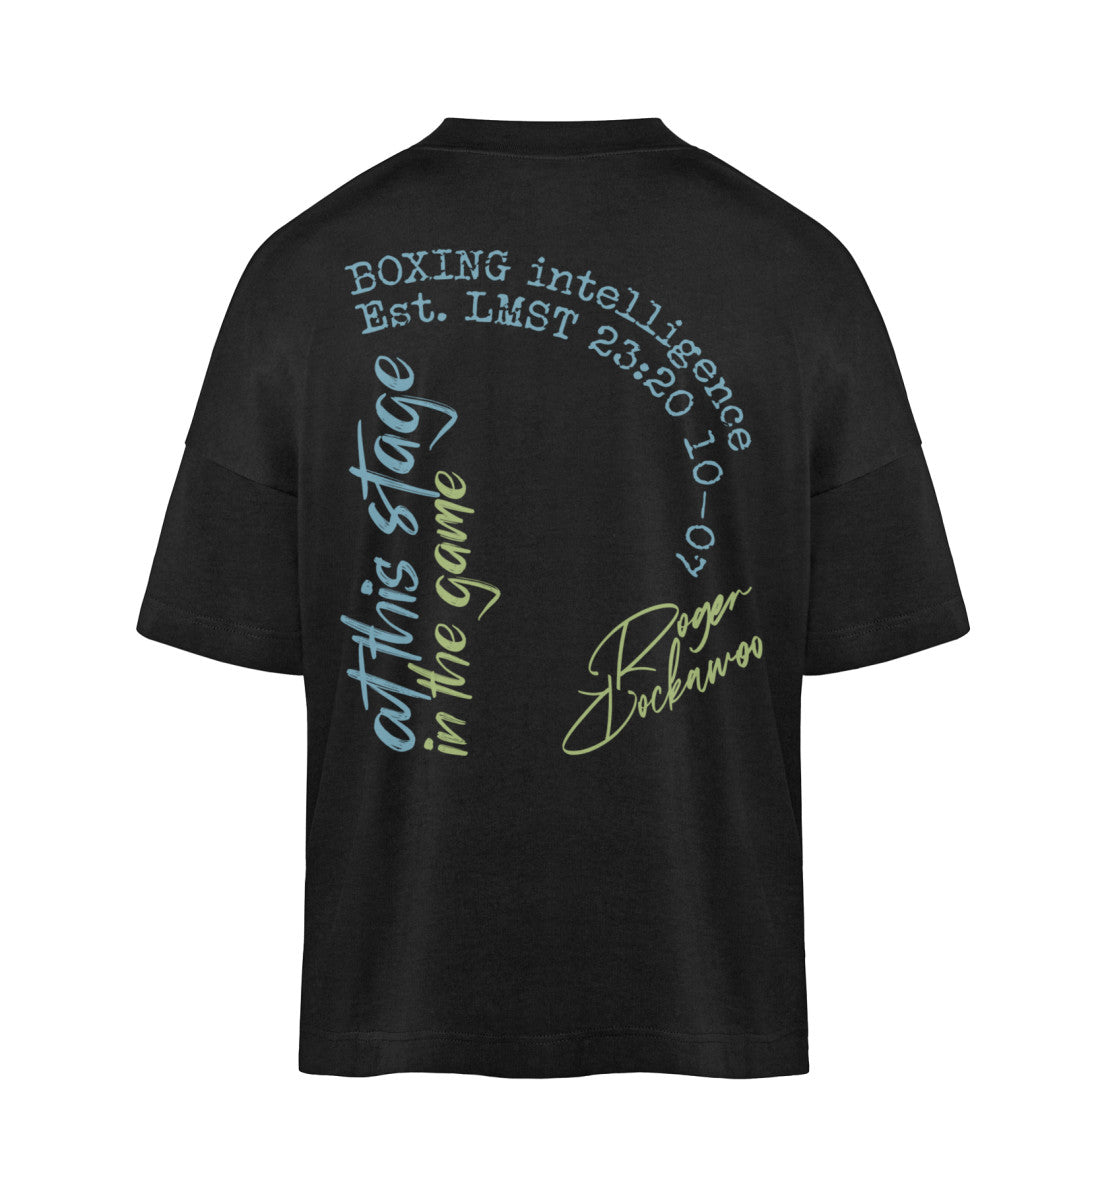 Schwarzes T-Shirt Unisex Oversize Fit für Frauen und Männer bedruckt mit dem Design der Roger Rockawoo Kollektion Boxing in the game